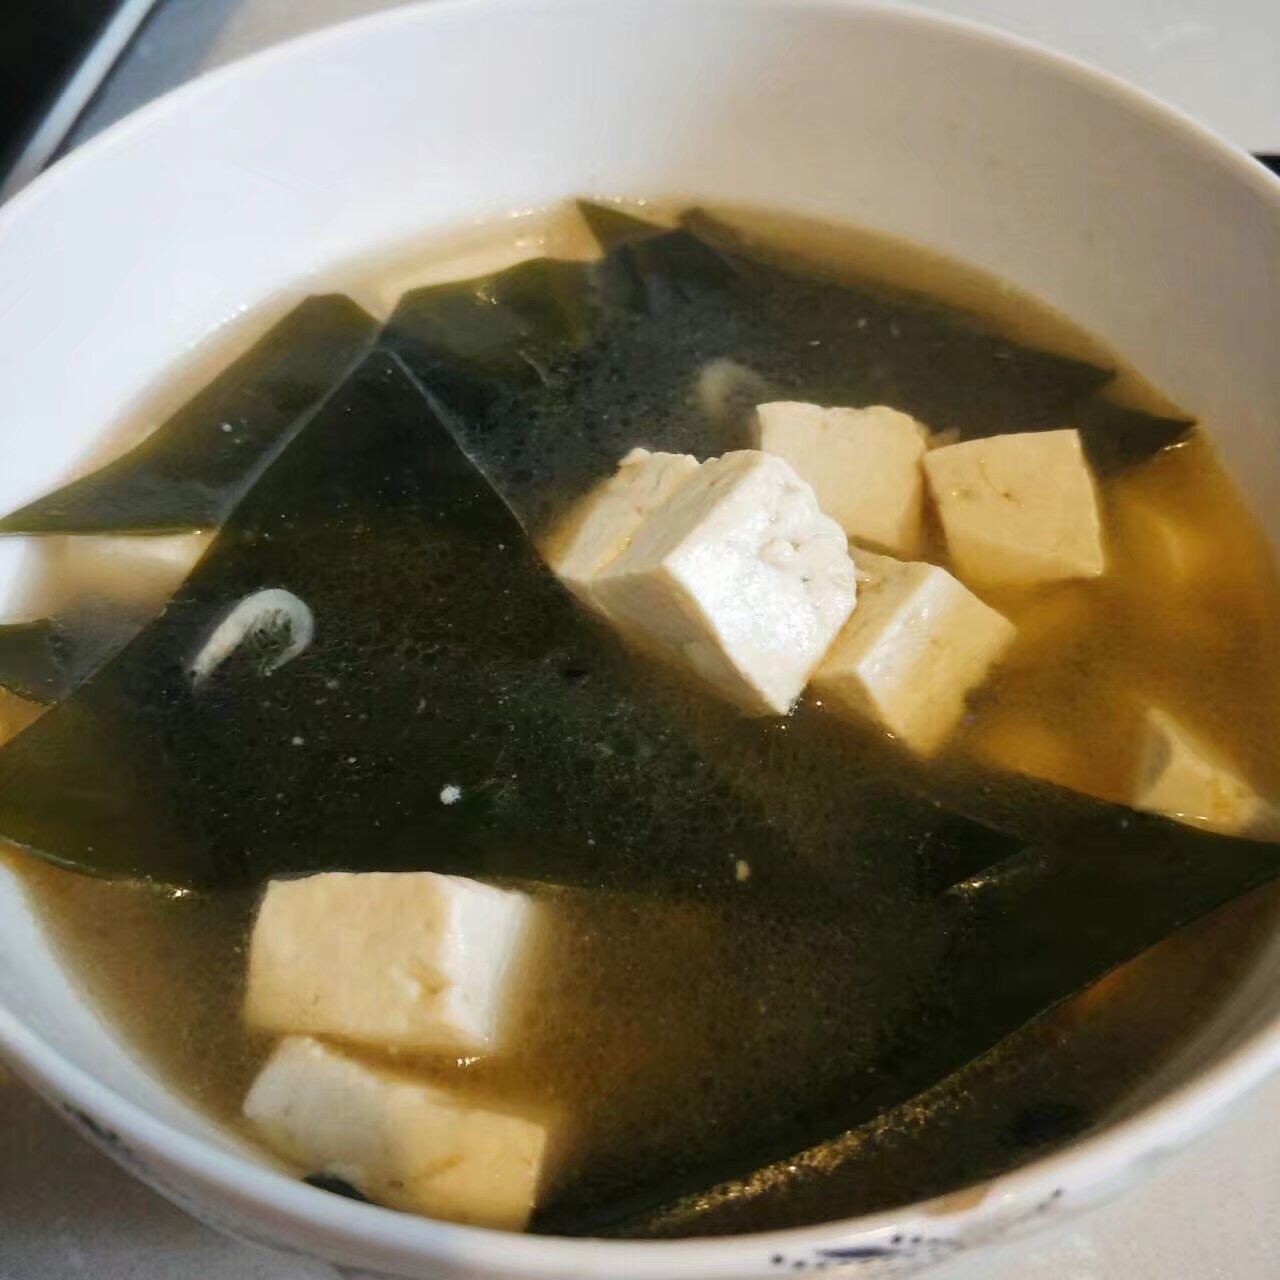 海带豆腐汤